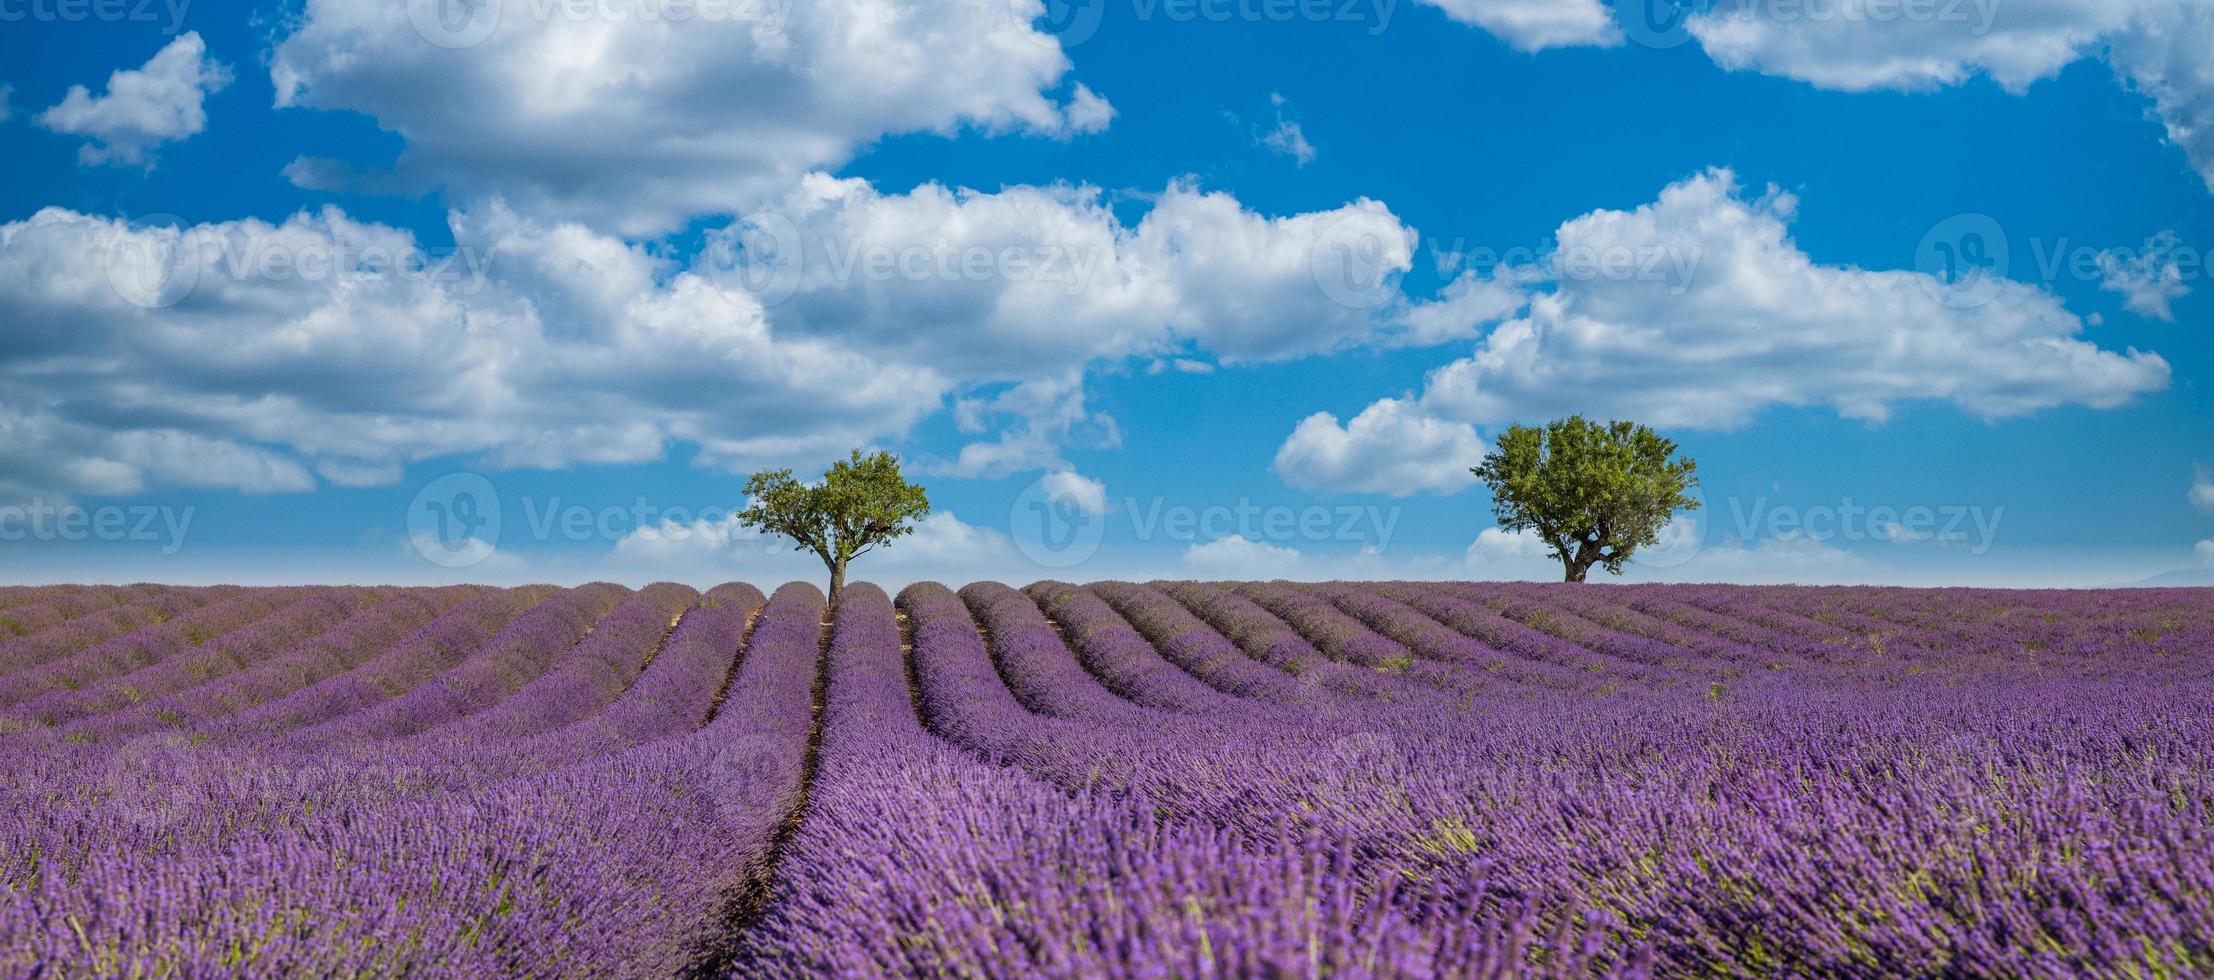 impresionante paisaje con campo de lavanda en un día soleado. flores de lavanda fragantes violetas florecientes, increíble paisaje escénico, árboles y cielo azul nublado. paisaje idílico de la naturaleza foto